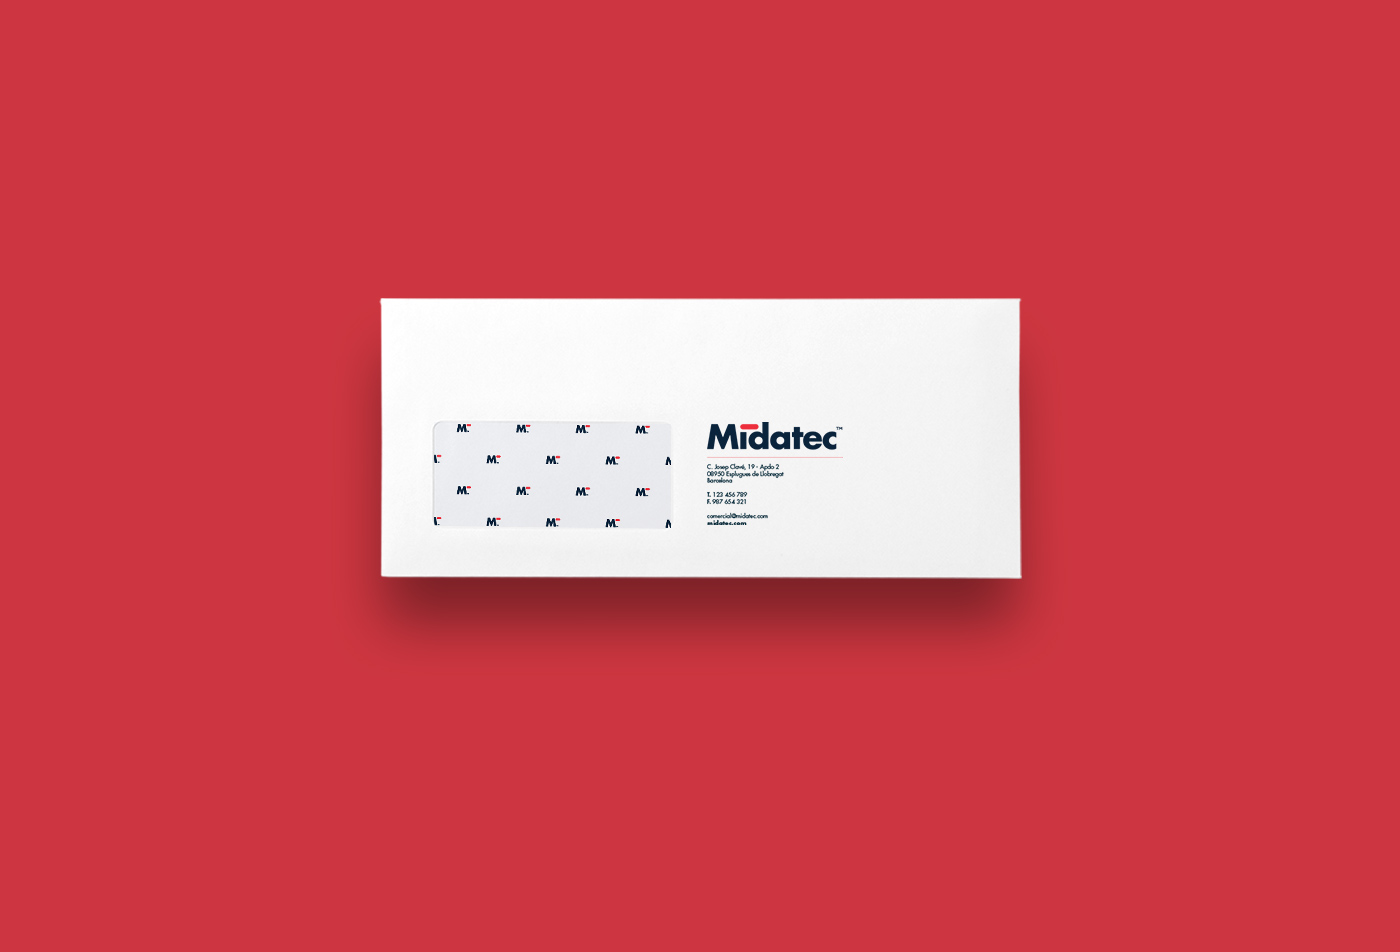 Diseño de identidad corporativa para empresa tecnológica - Diseño de papelería corporativa Midatec - Estudio de diseño Valencia Pixelarte